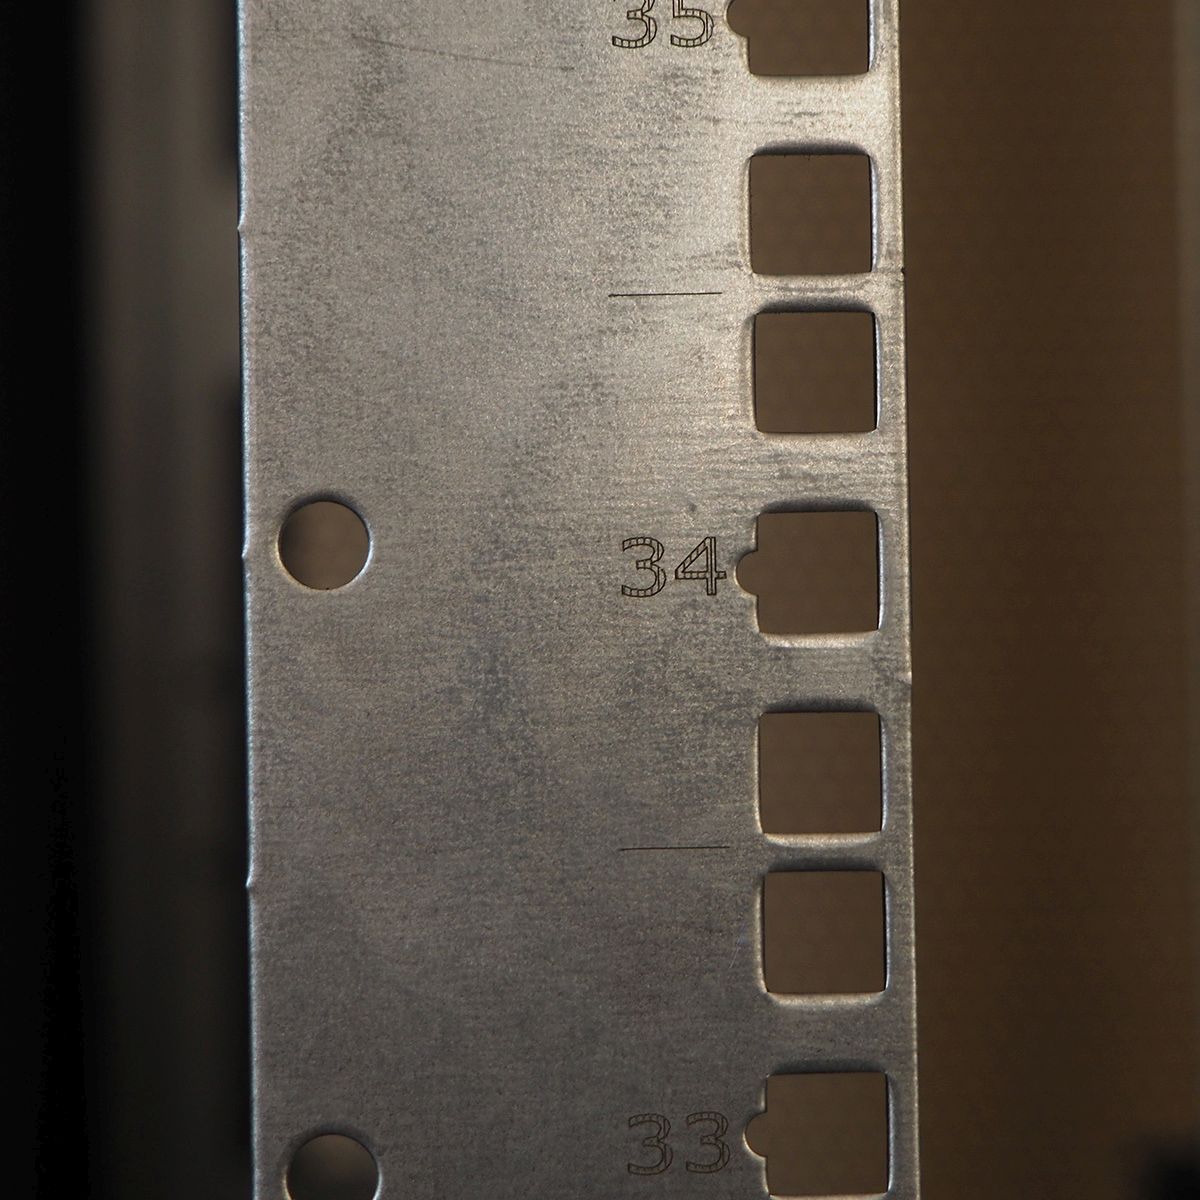 Шкаф серверный напольный 48U (800 × 1200) двойные перфорированные двери 2 шт., цвет черный